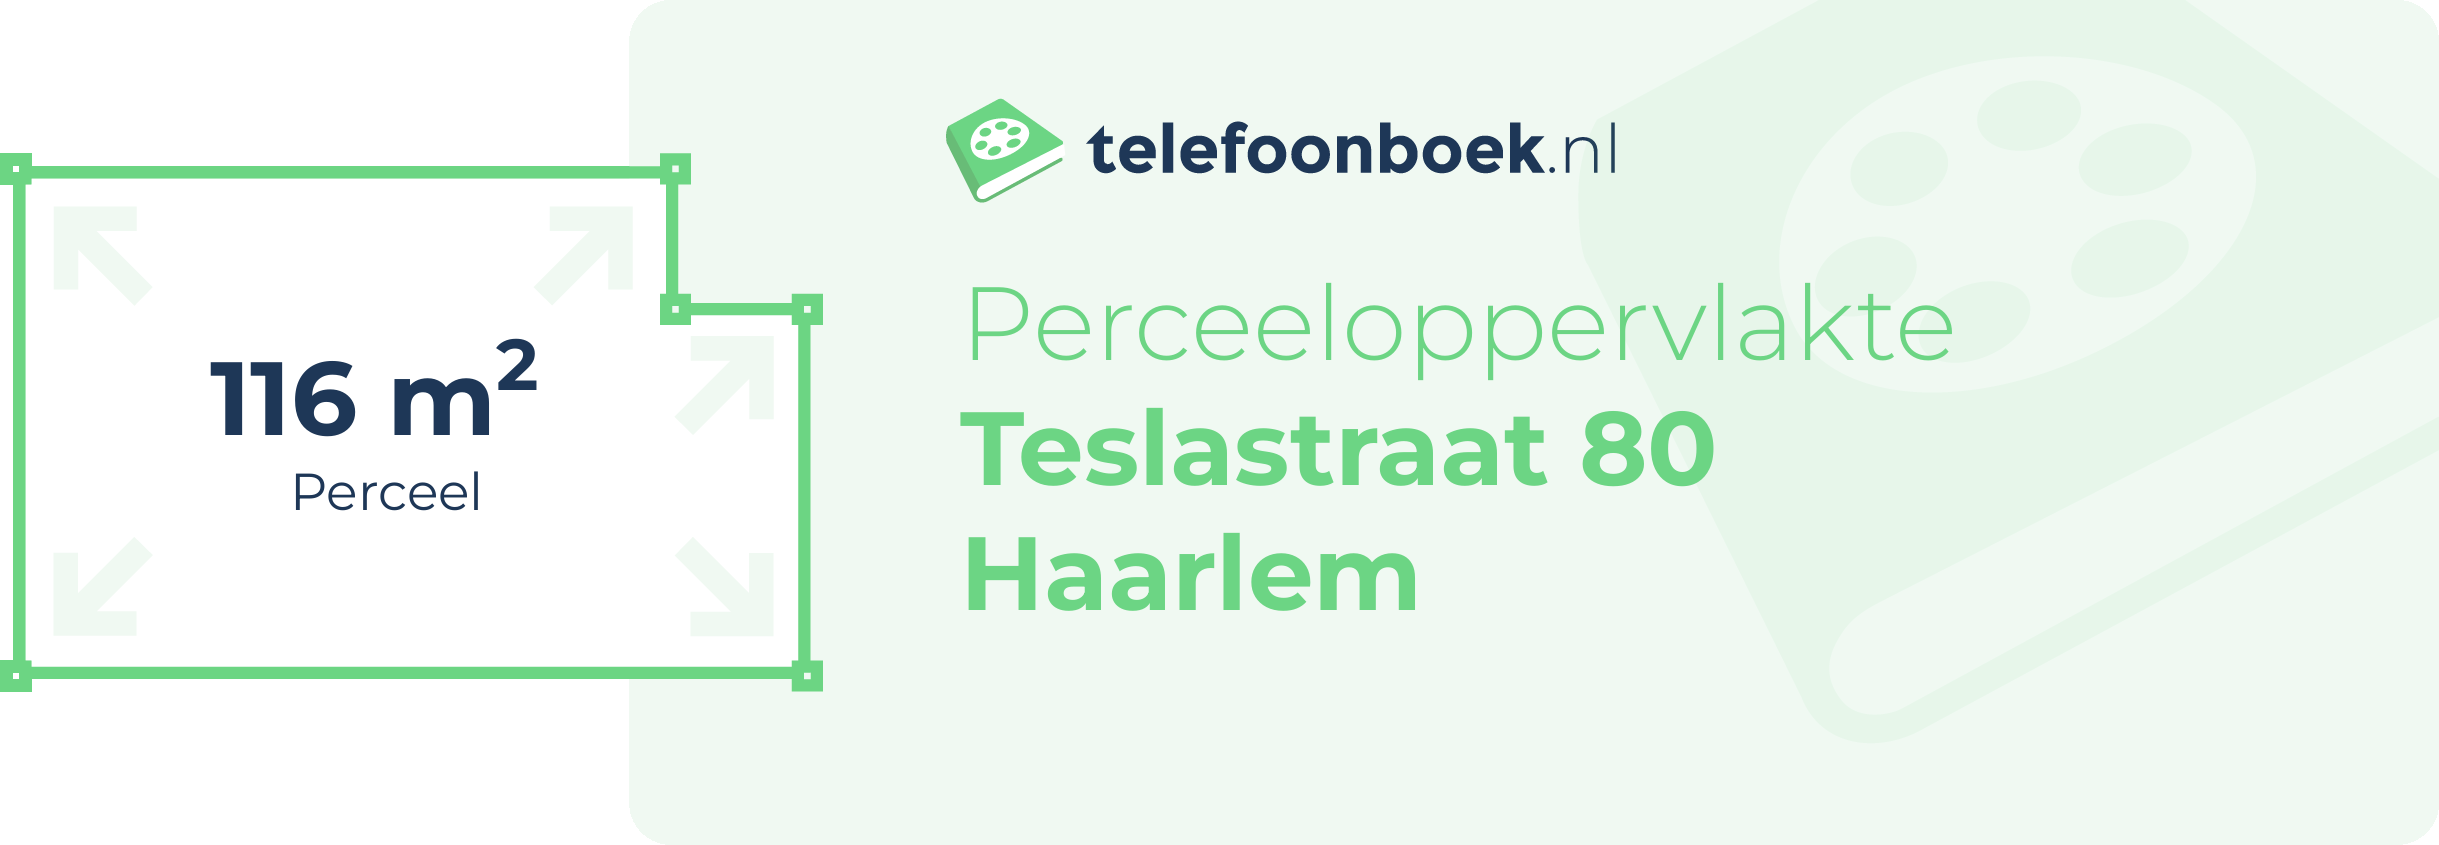 Perceeloppervlakte Teslastraat 80 Haarlem